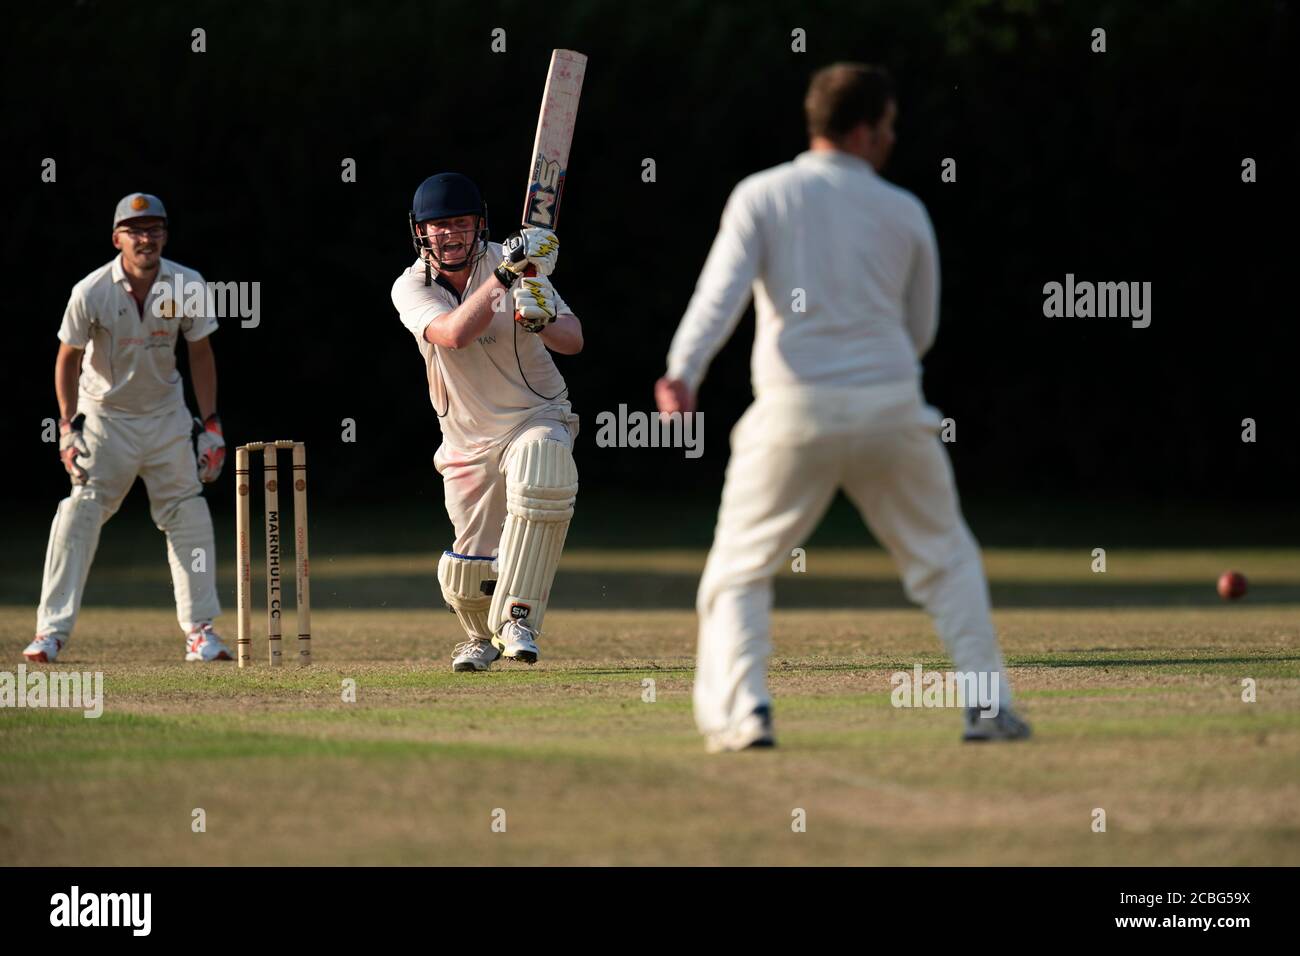 Batsman in action Stock Photo